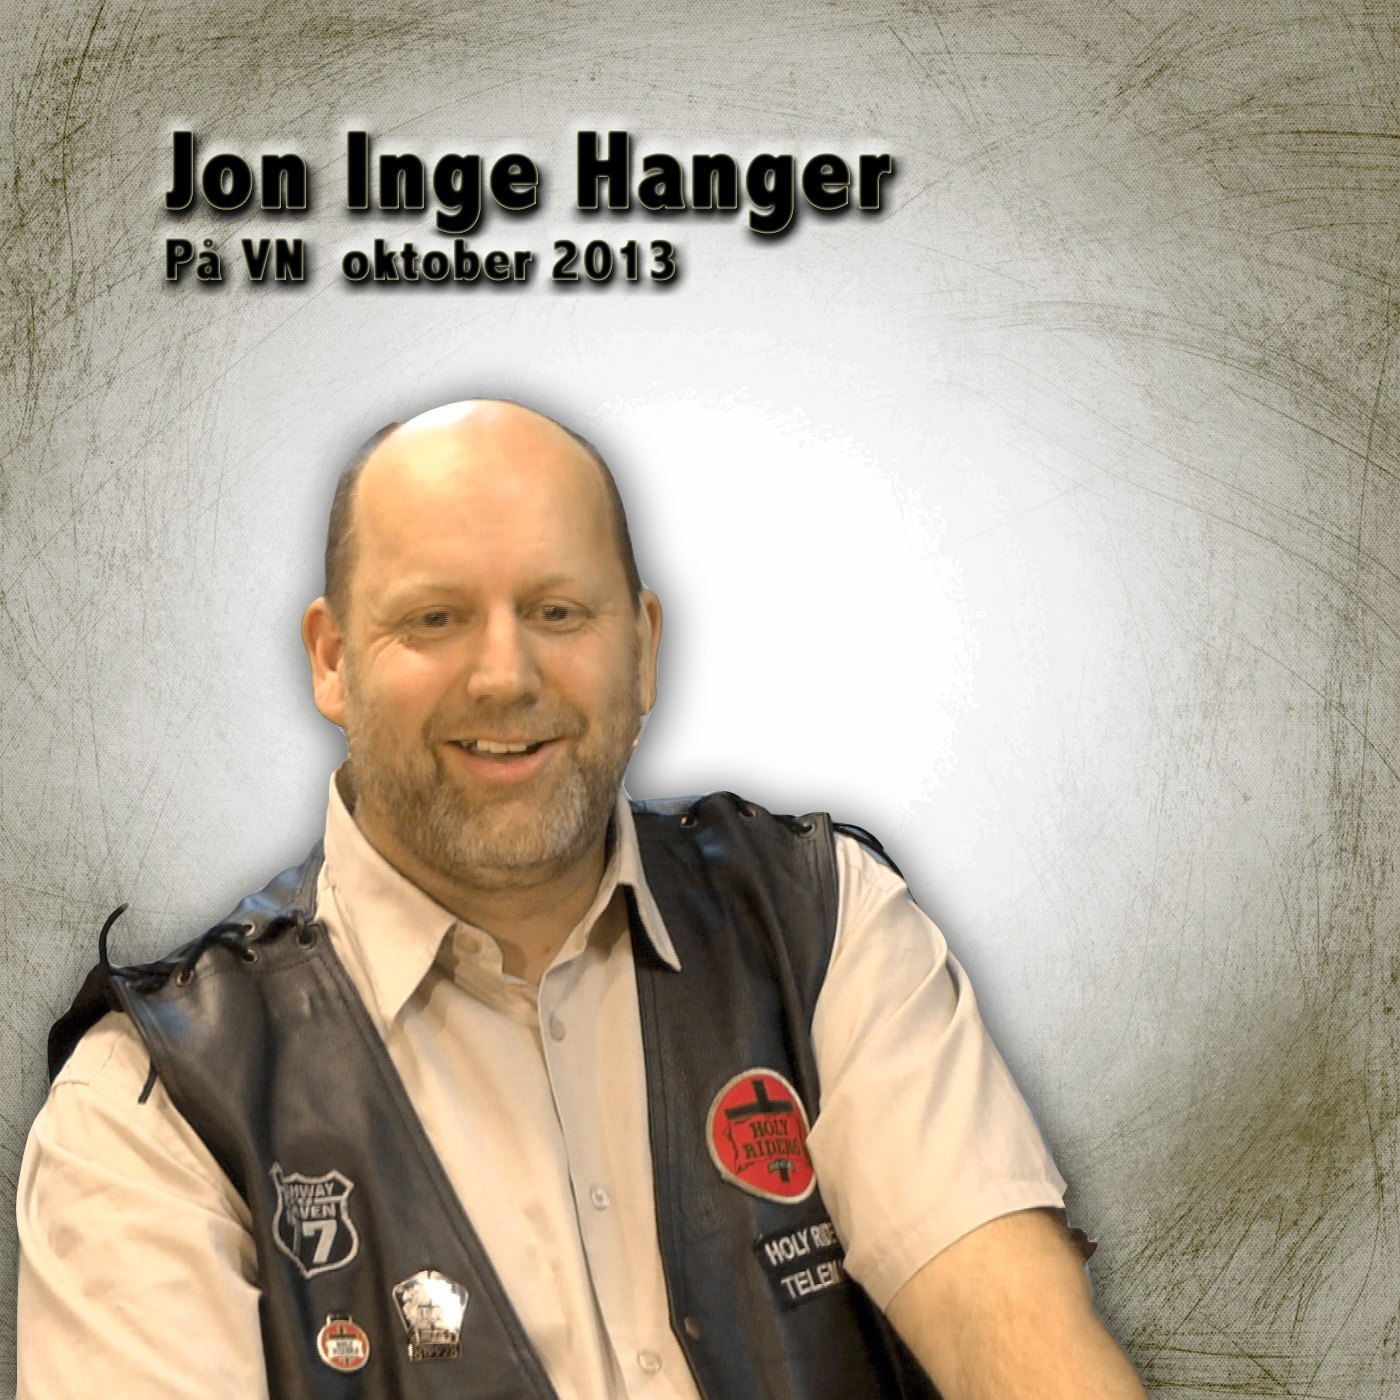 Jon Inge Hanger